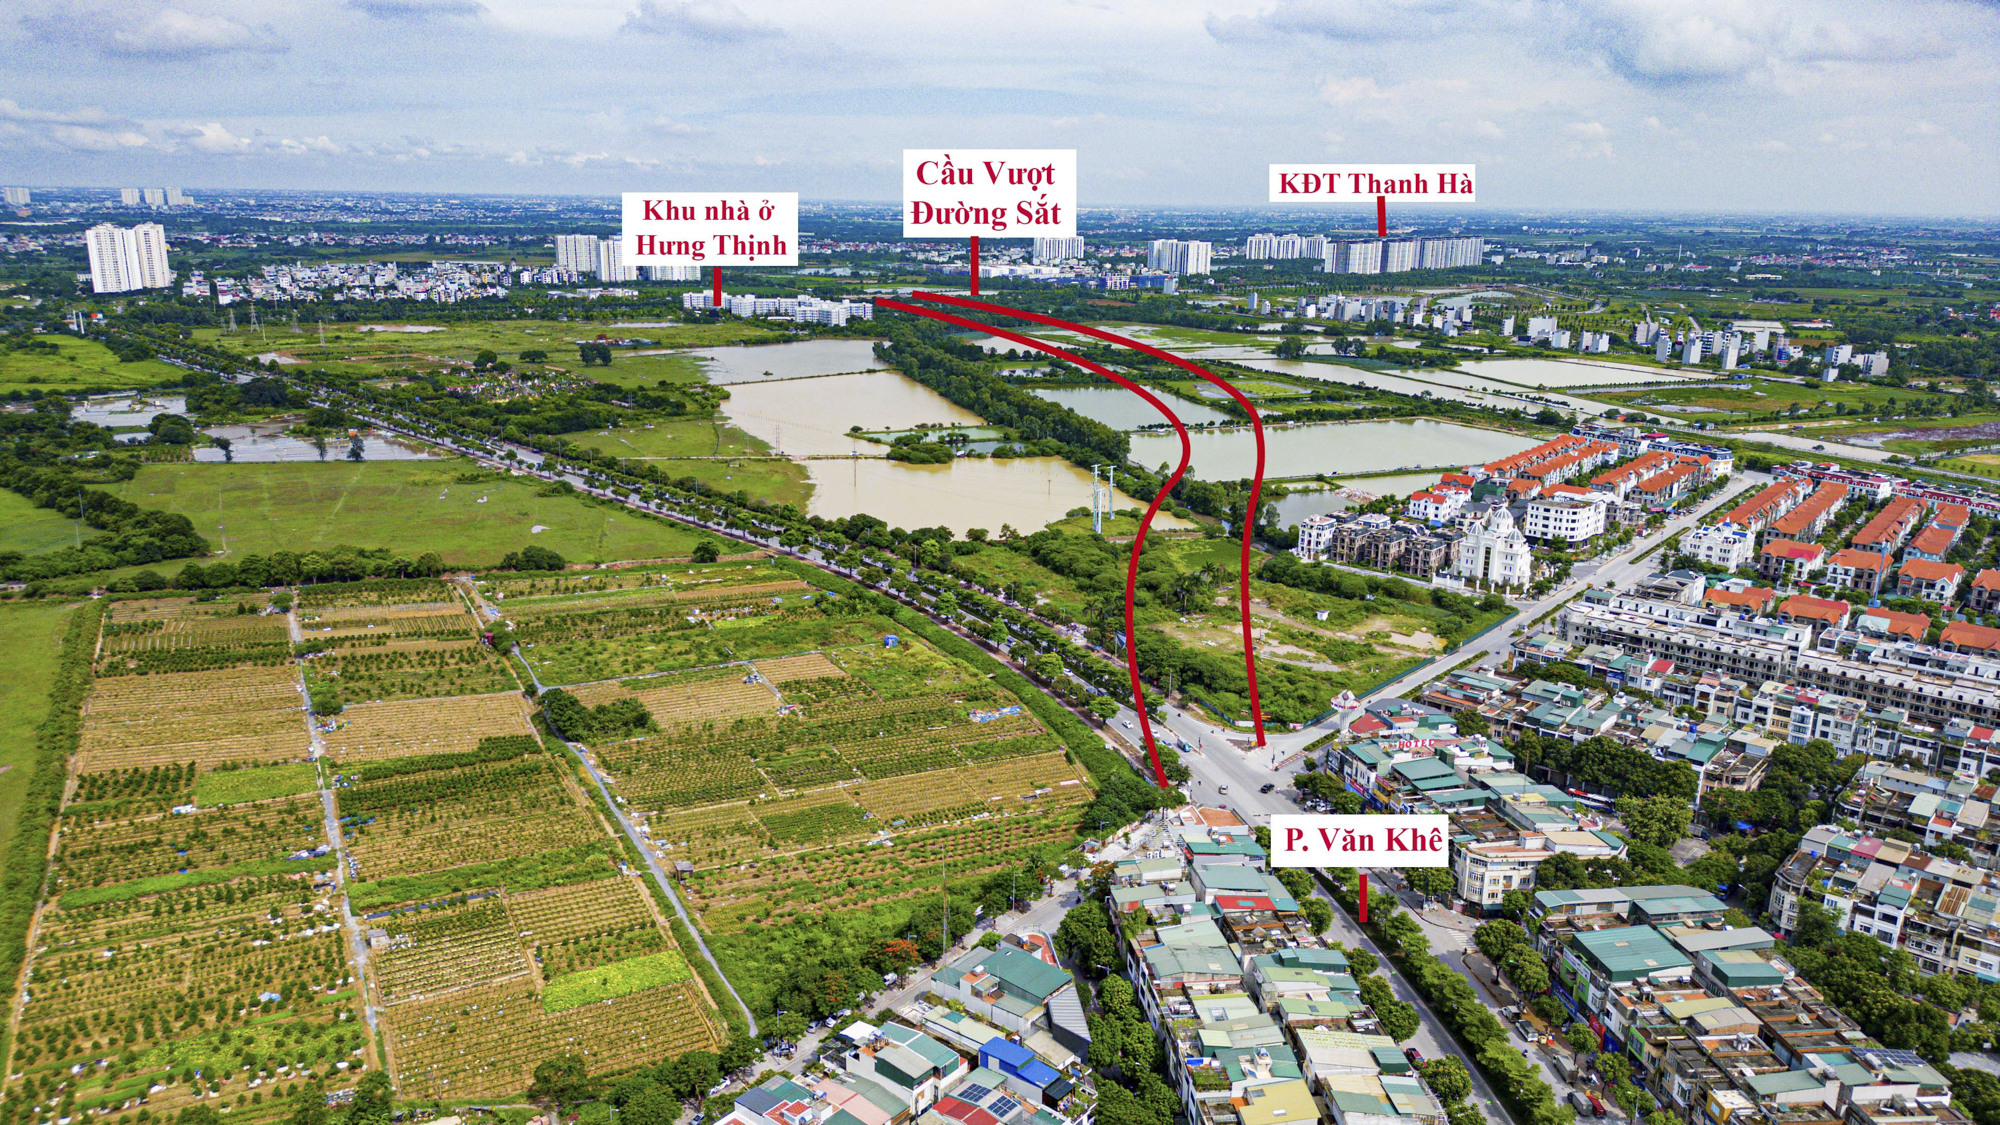 Hà Nội: Toàn cảnh khu vực sắp được đầu tư 5.600 tỷ để làm đường vành đai, dự kiến được kết nối với một cây cầu trị giá 11.000 tỷ- Ảnh 3.